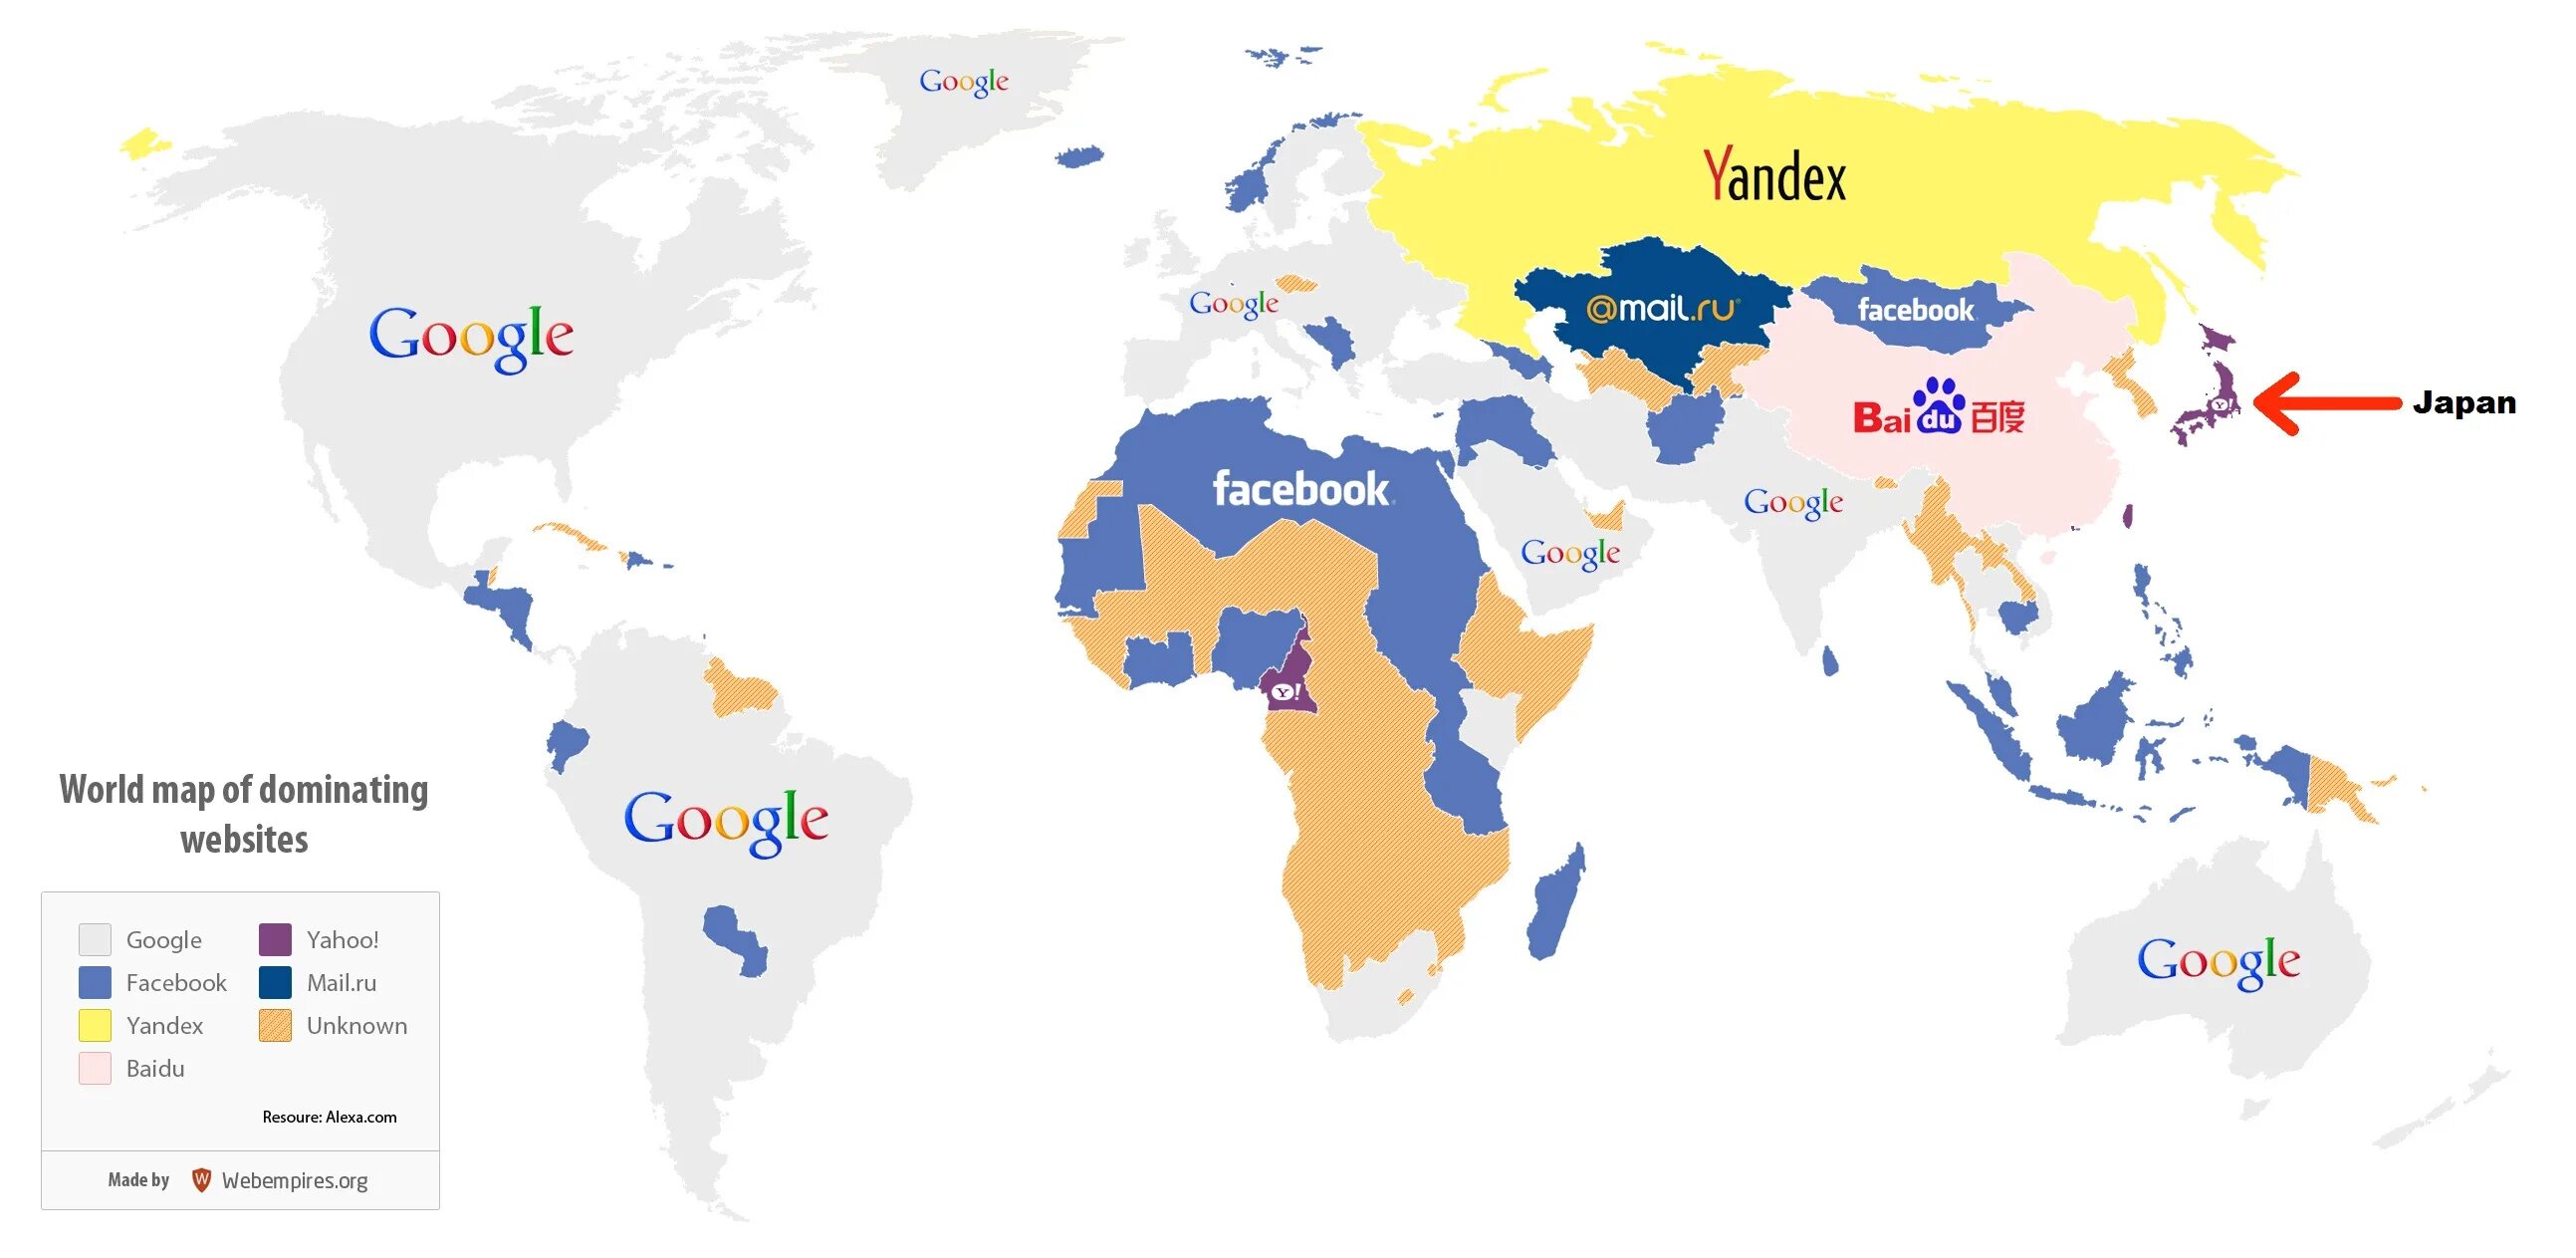 Поисковые системы на карте. Самые популярные карты в разных странах.